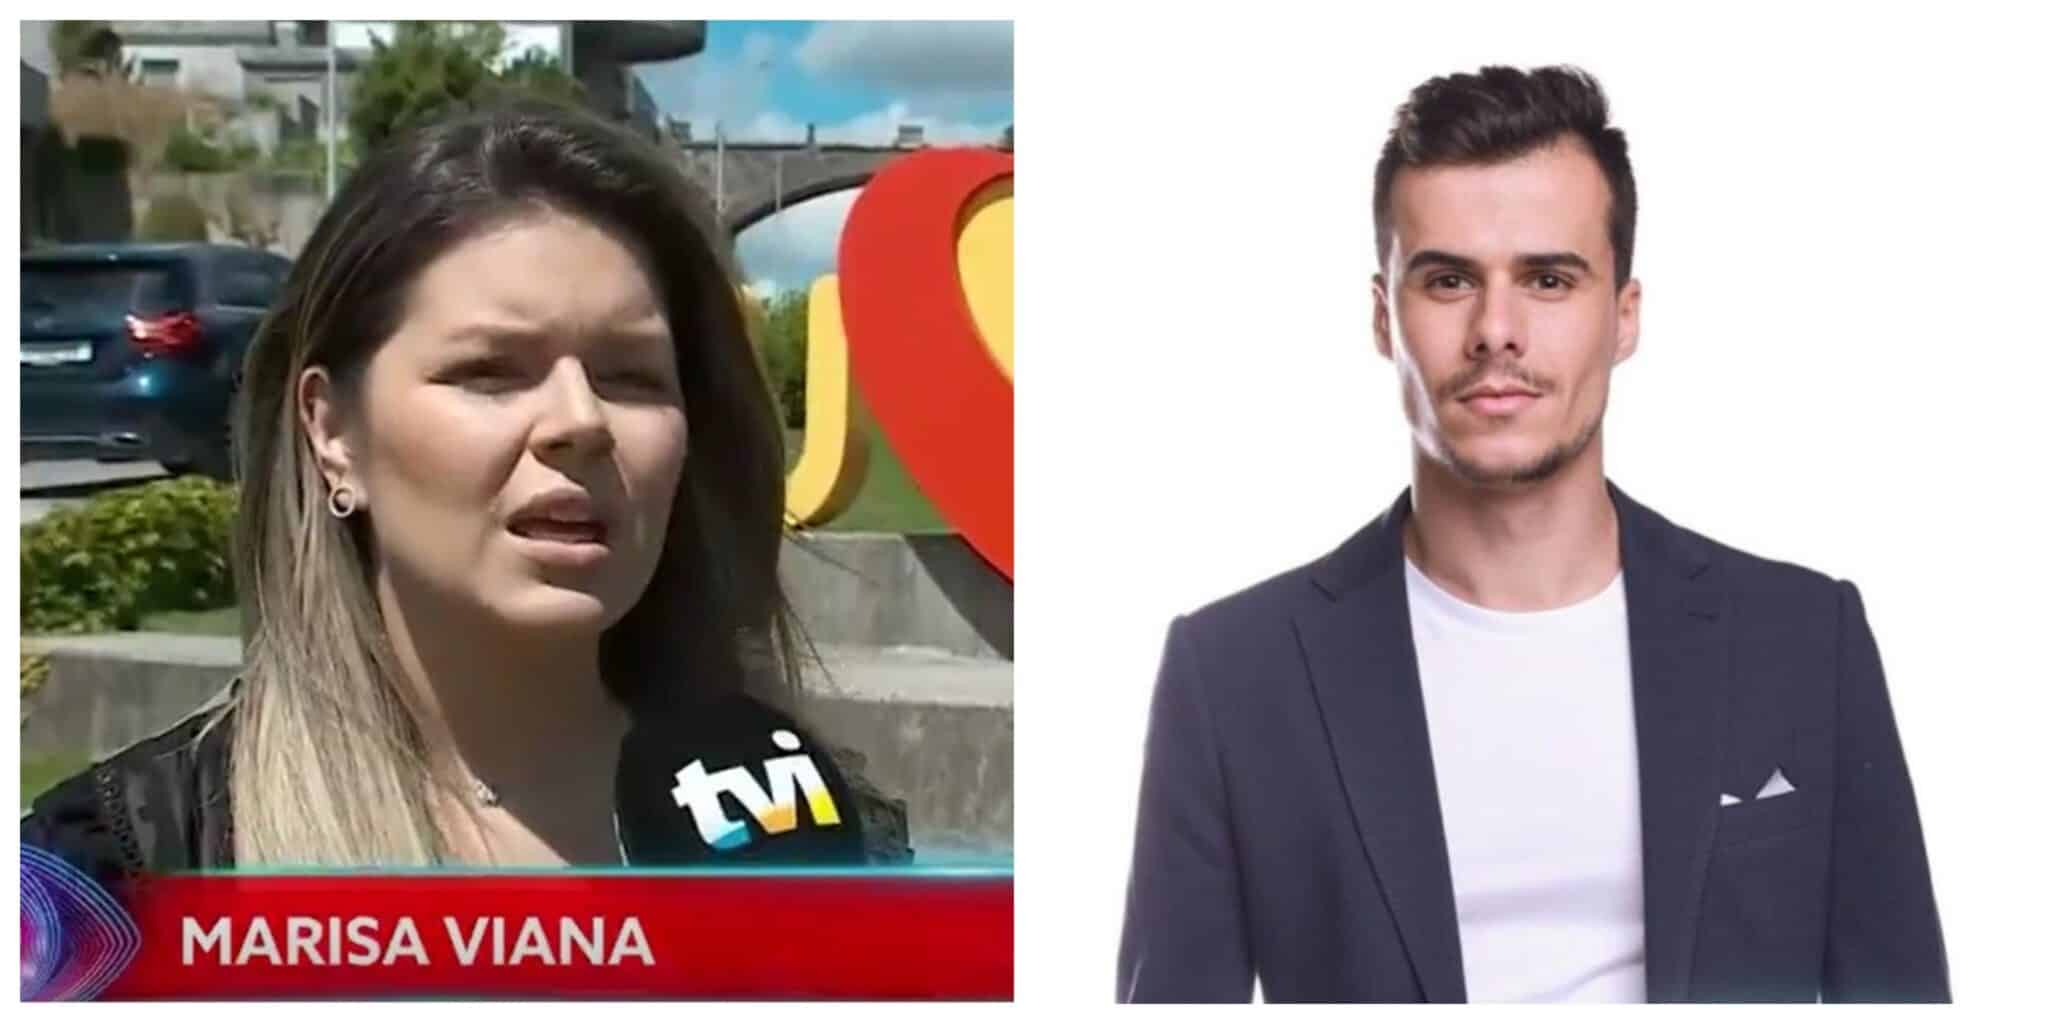 Marisa-Viana-Pedro-Alves